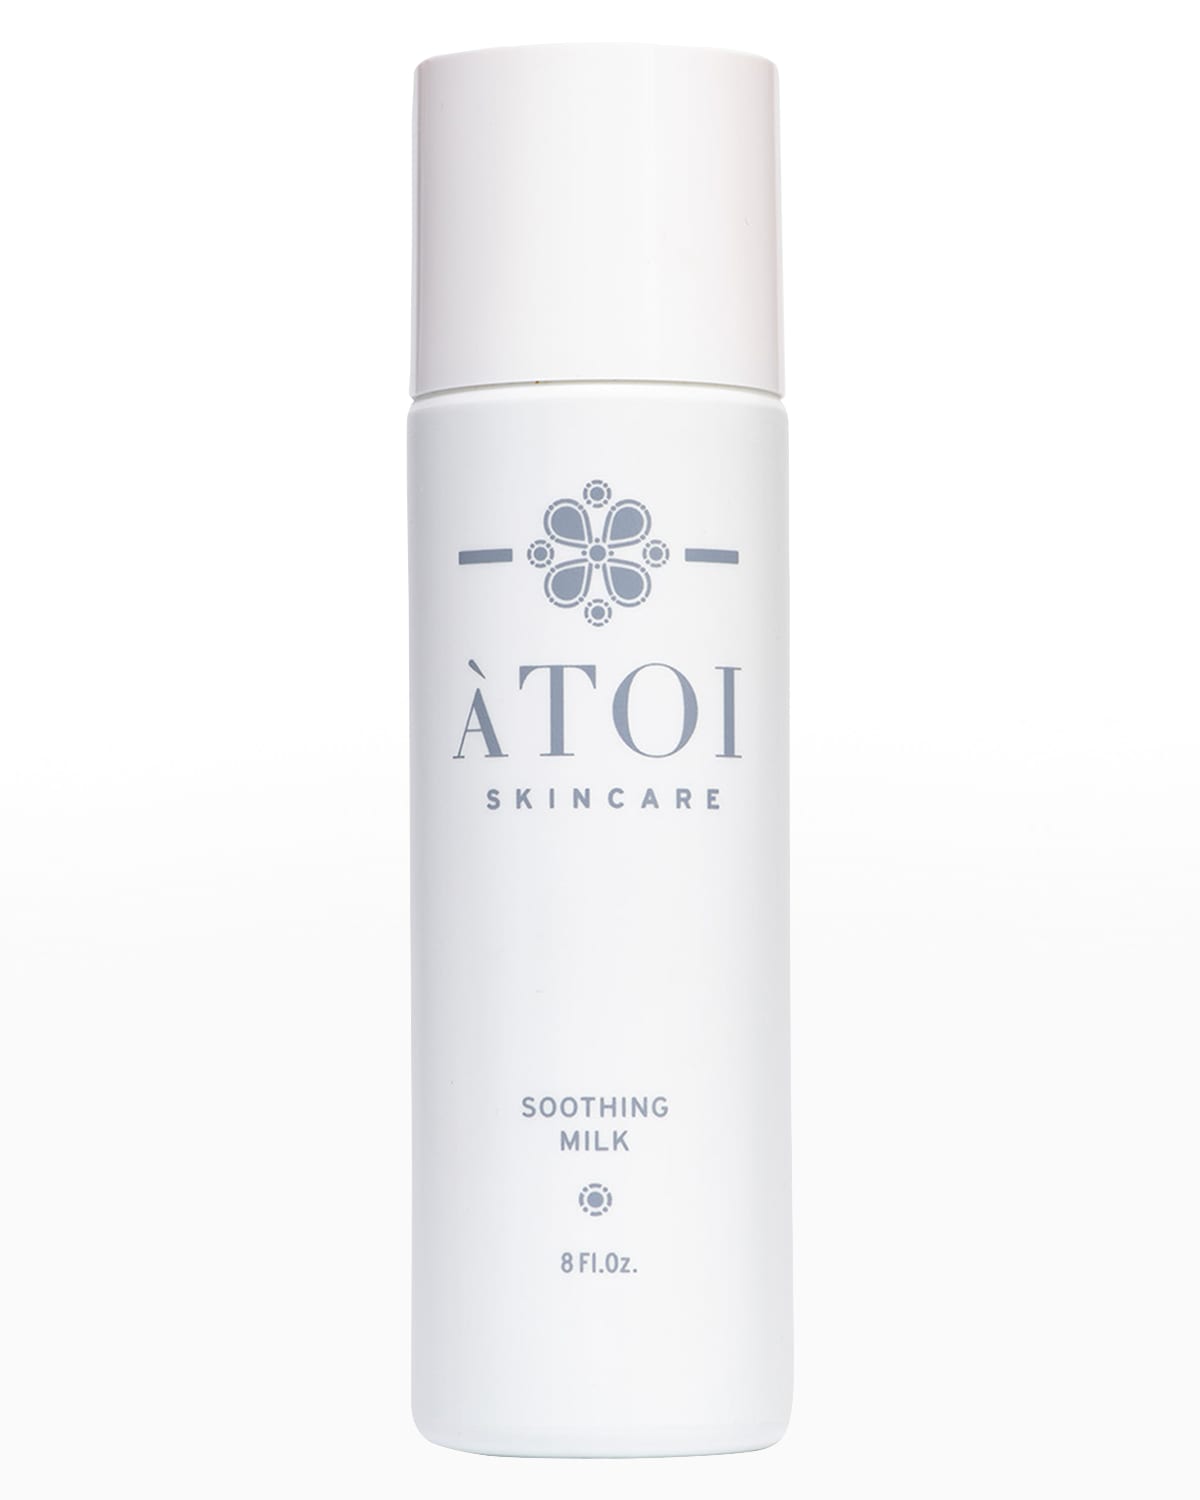 ATOI Skincare Soothing Milk, 8 oz.